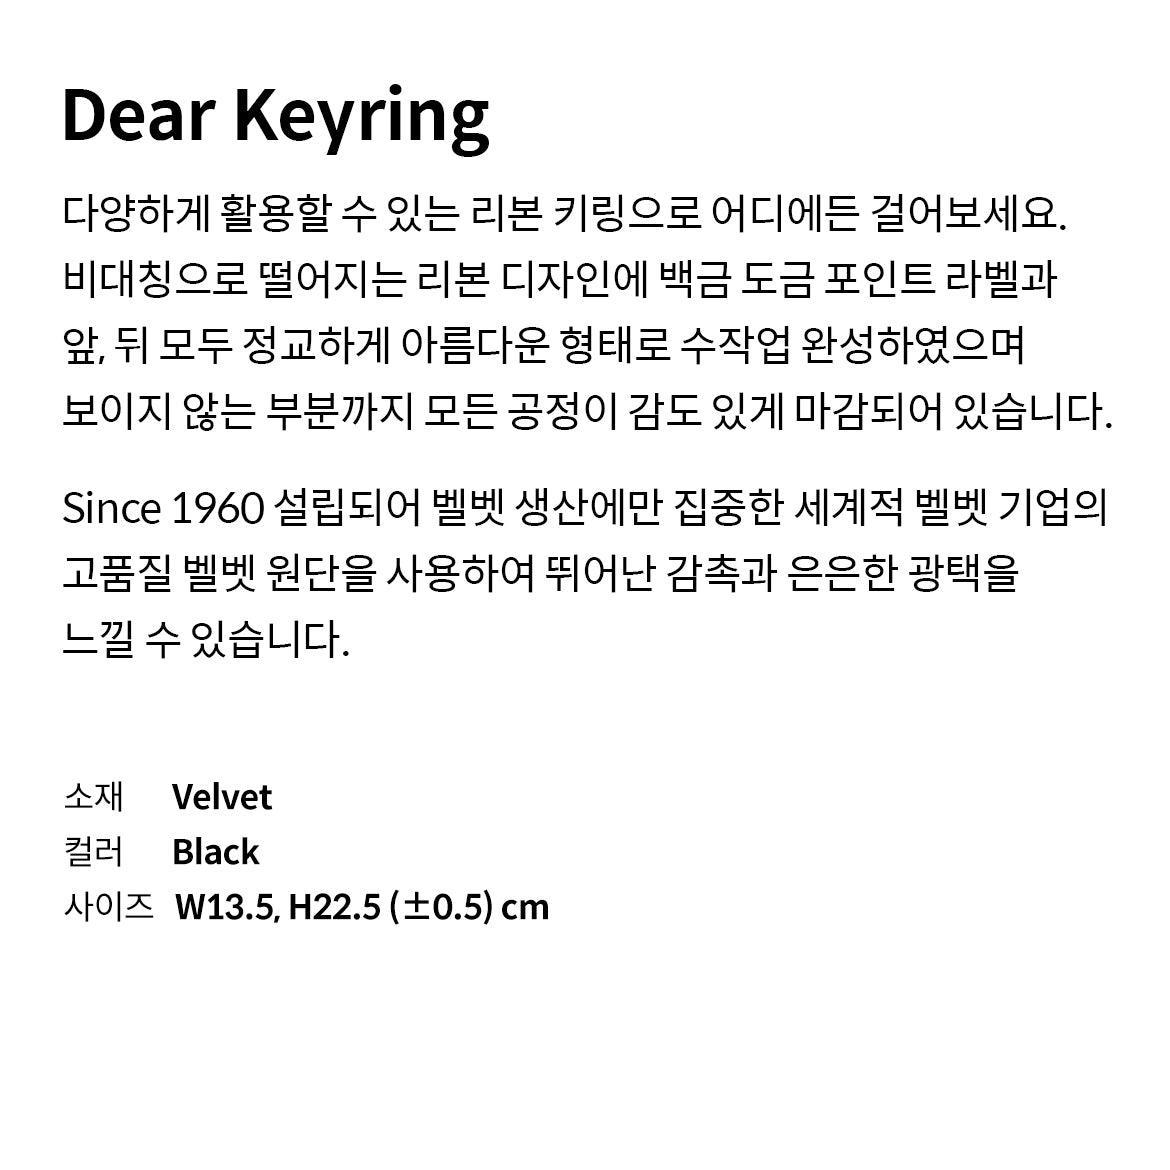 Dear Keyring